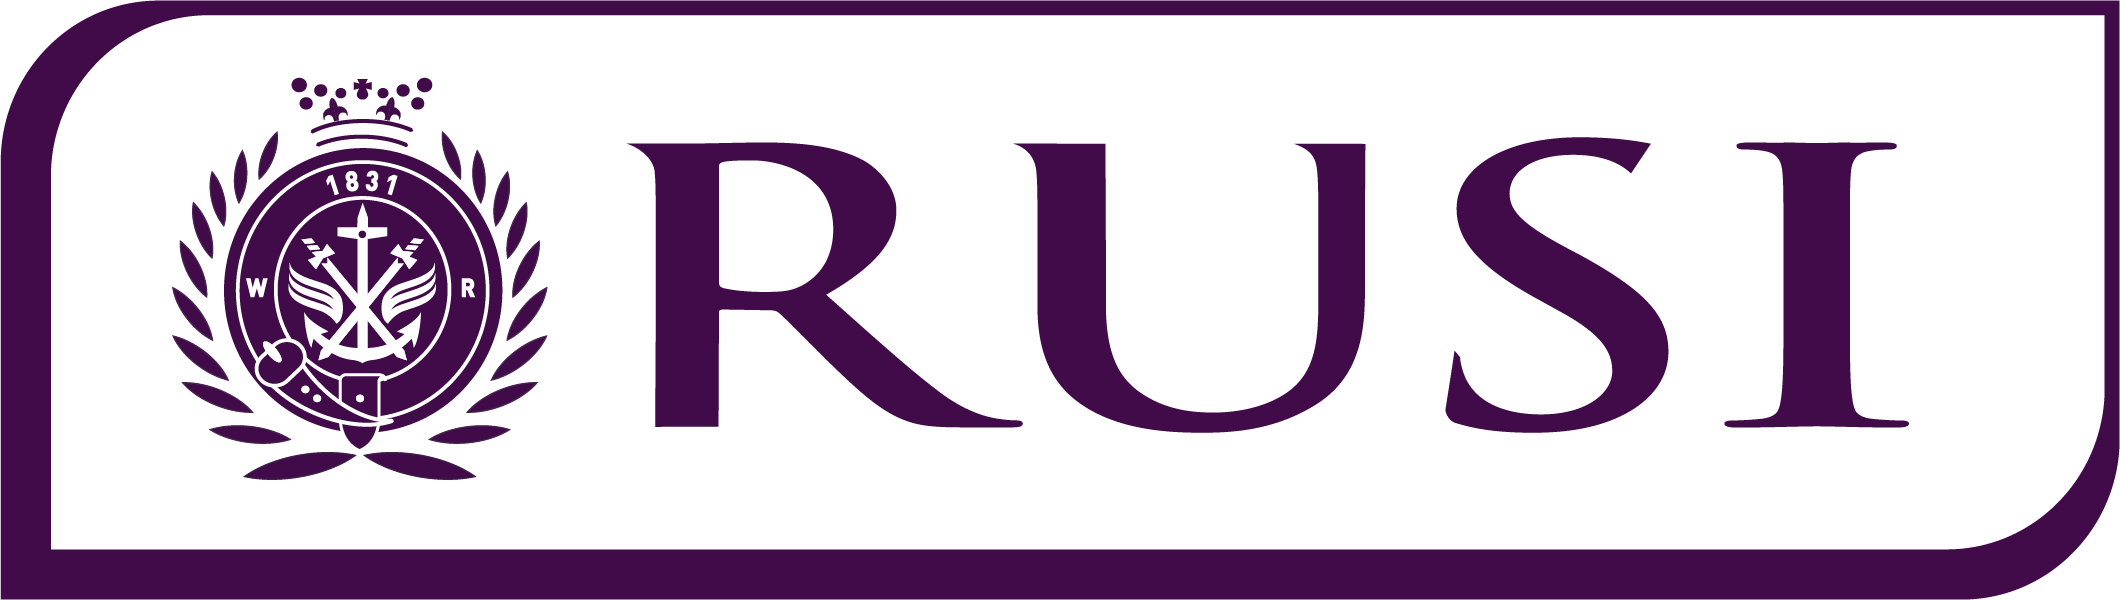 RUSI logo in white and purple